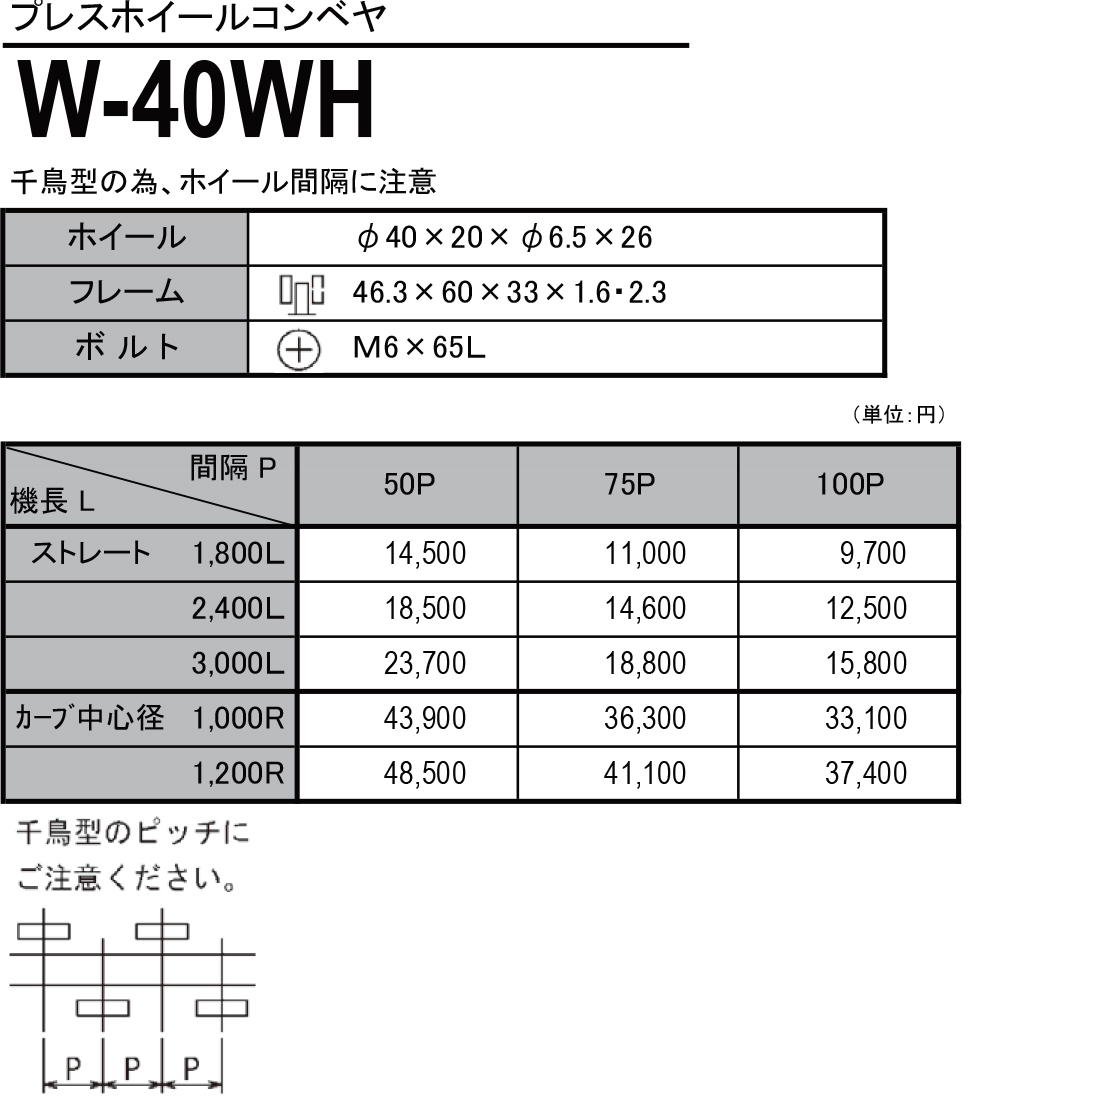 W-40WH　プレスホイールコンベヤ(スチール製）　ホイールコンベヤ　価格表